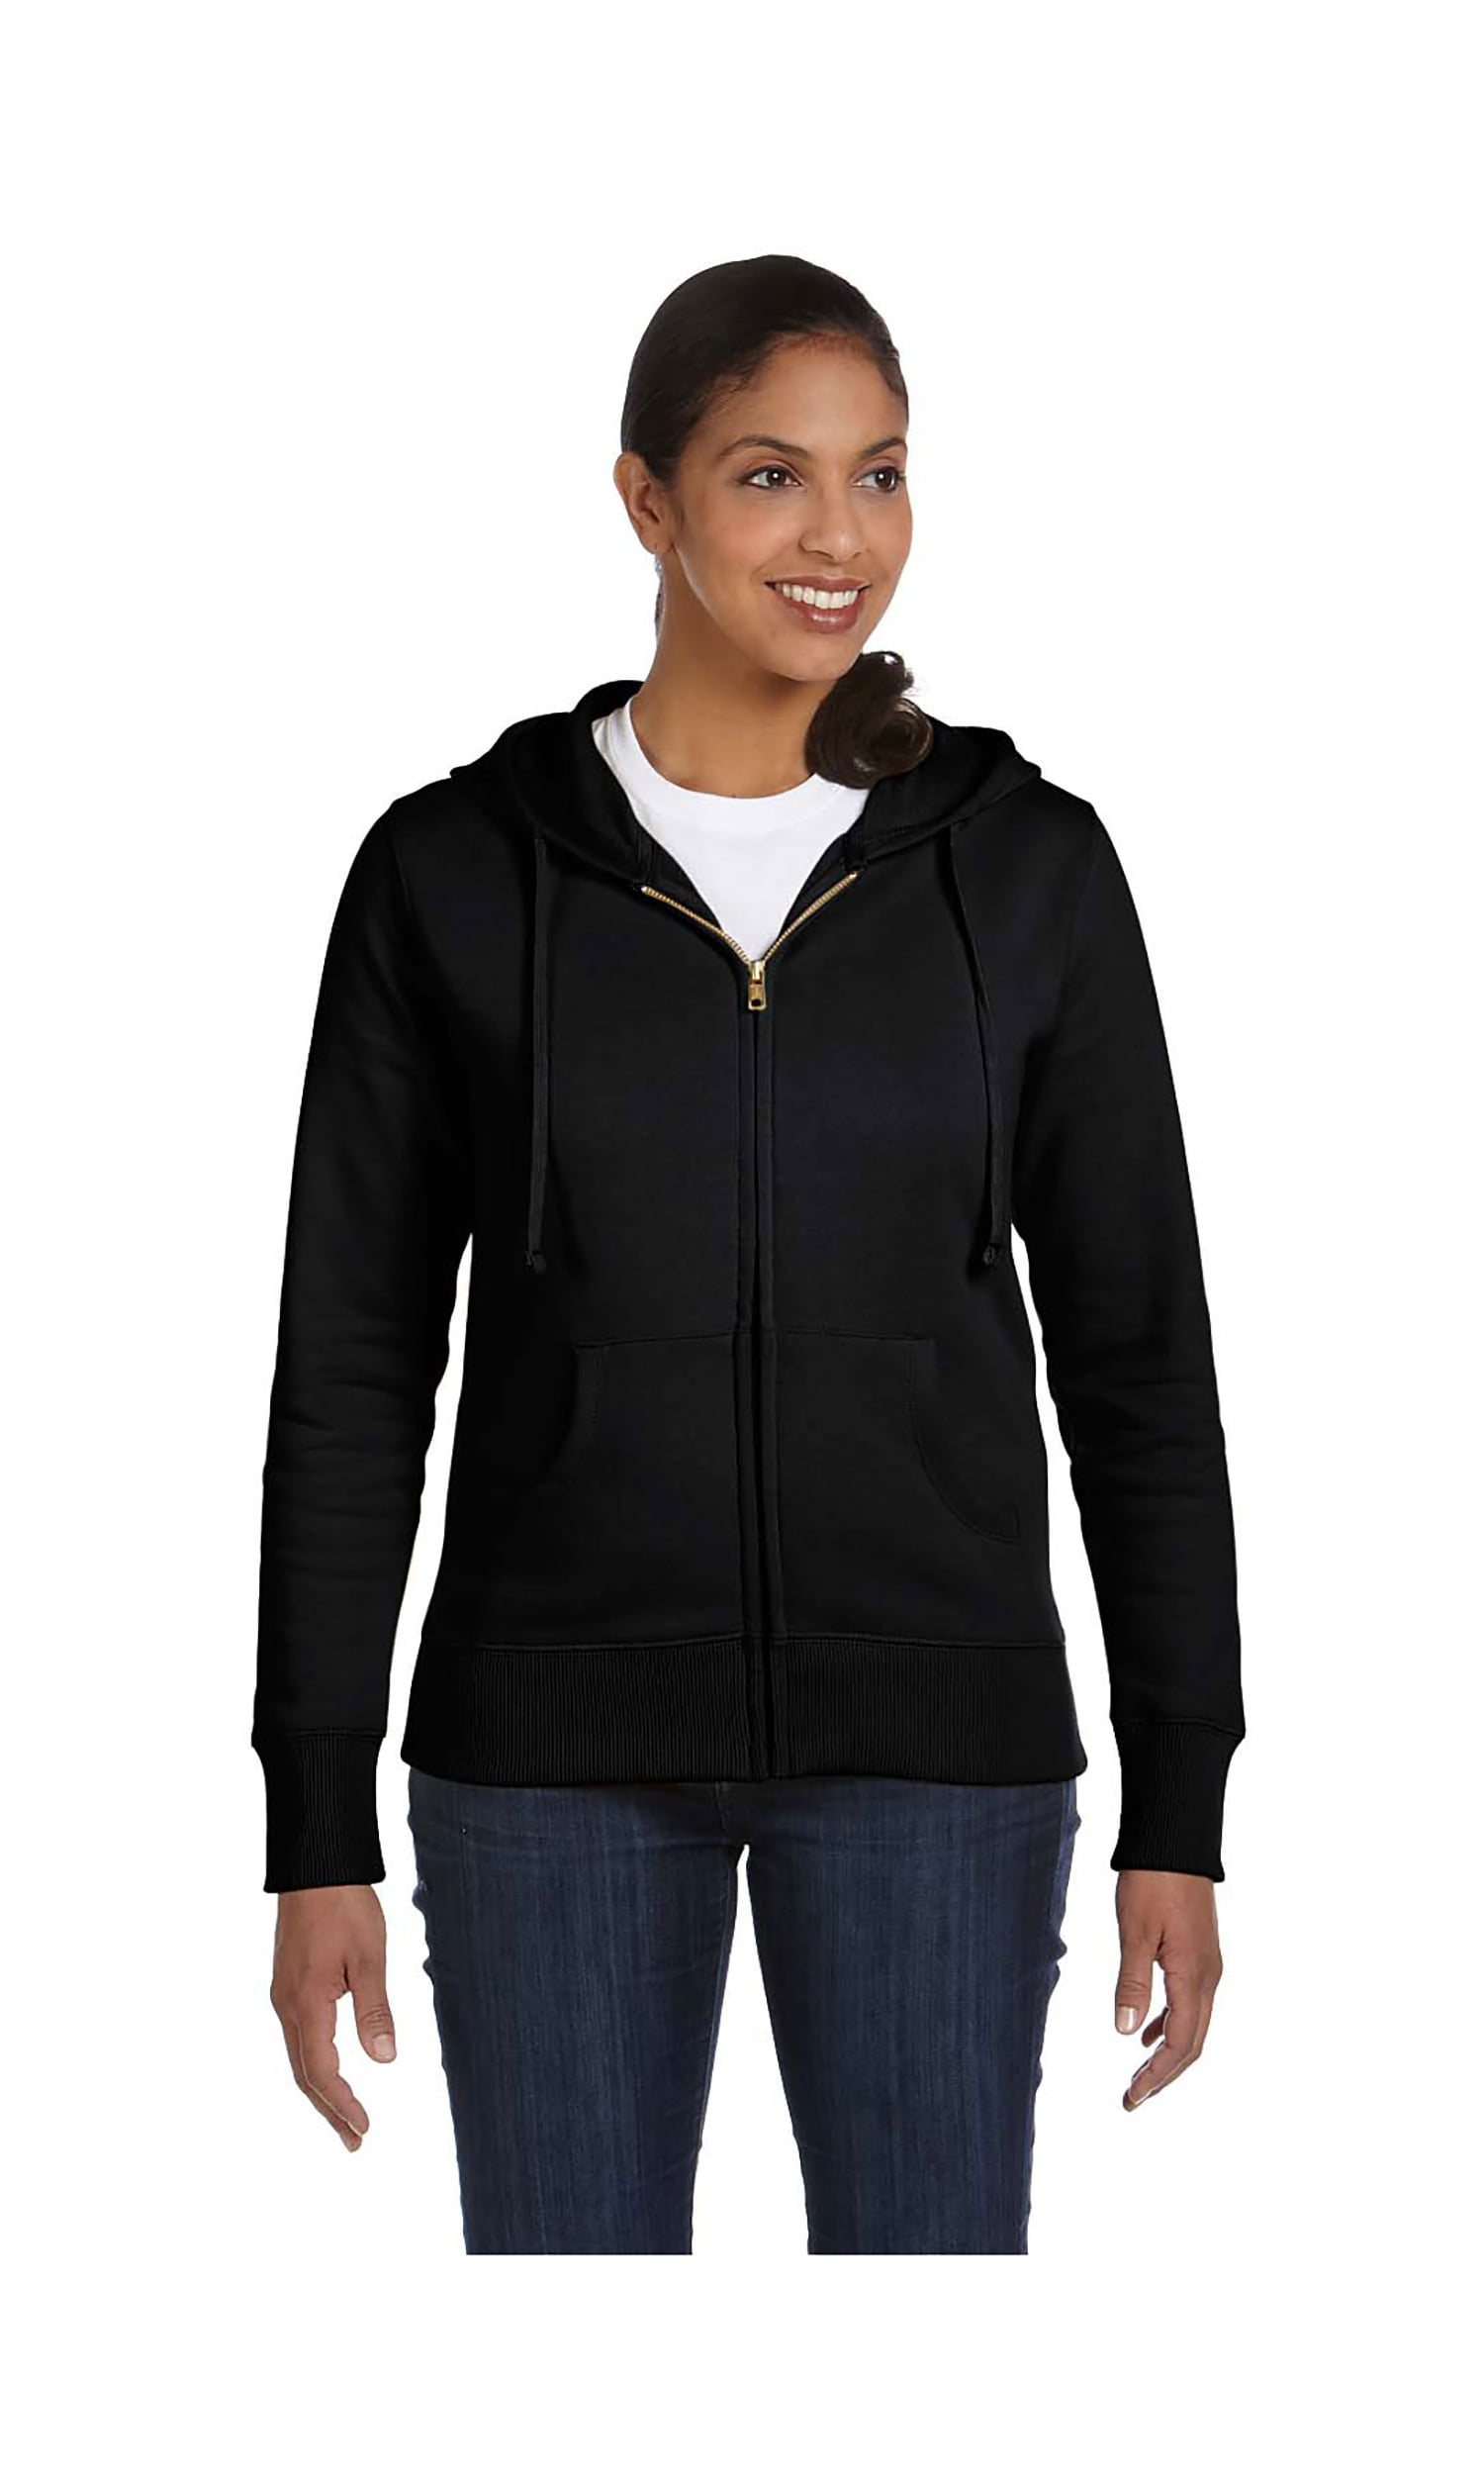 Econscious Women s Organic Full Zipper Hood Jacket Style EC4501 ec3d37fe 9081 48b0 a275 874fa91777eb 1.8e36fd3d185c04a00ef57aca0cec3e8d